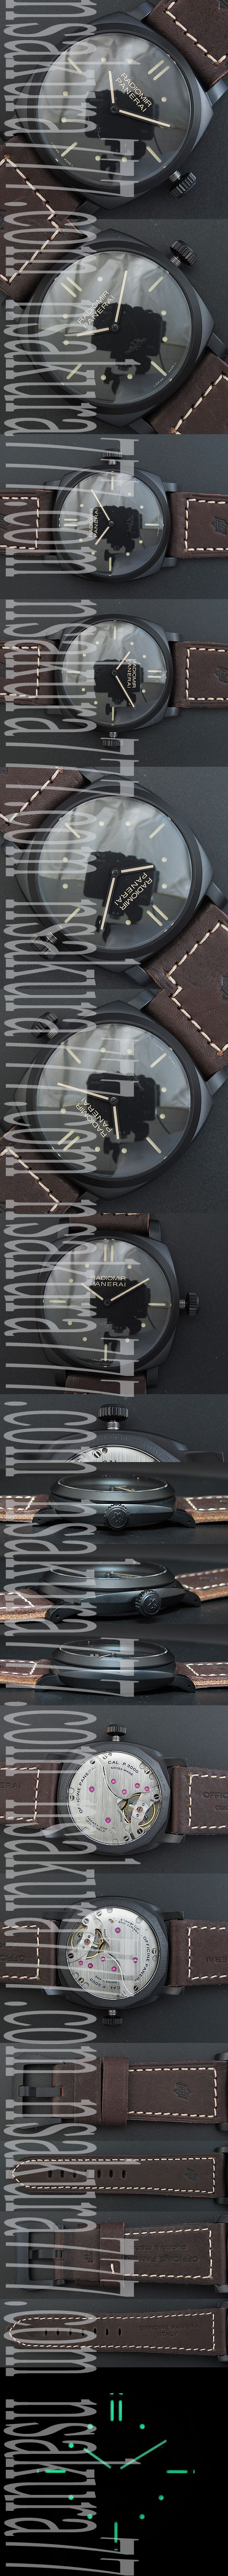 防水腕時計 パネライ PAM00577 スーパーコピー時計通販 P.3000ムーブ搭載 手動(19石)